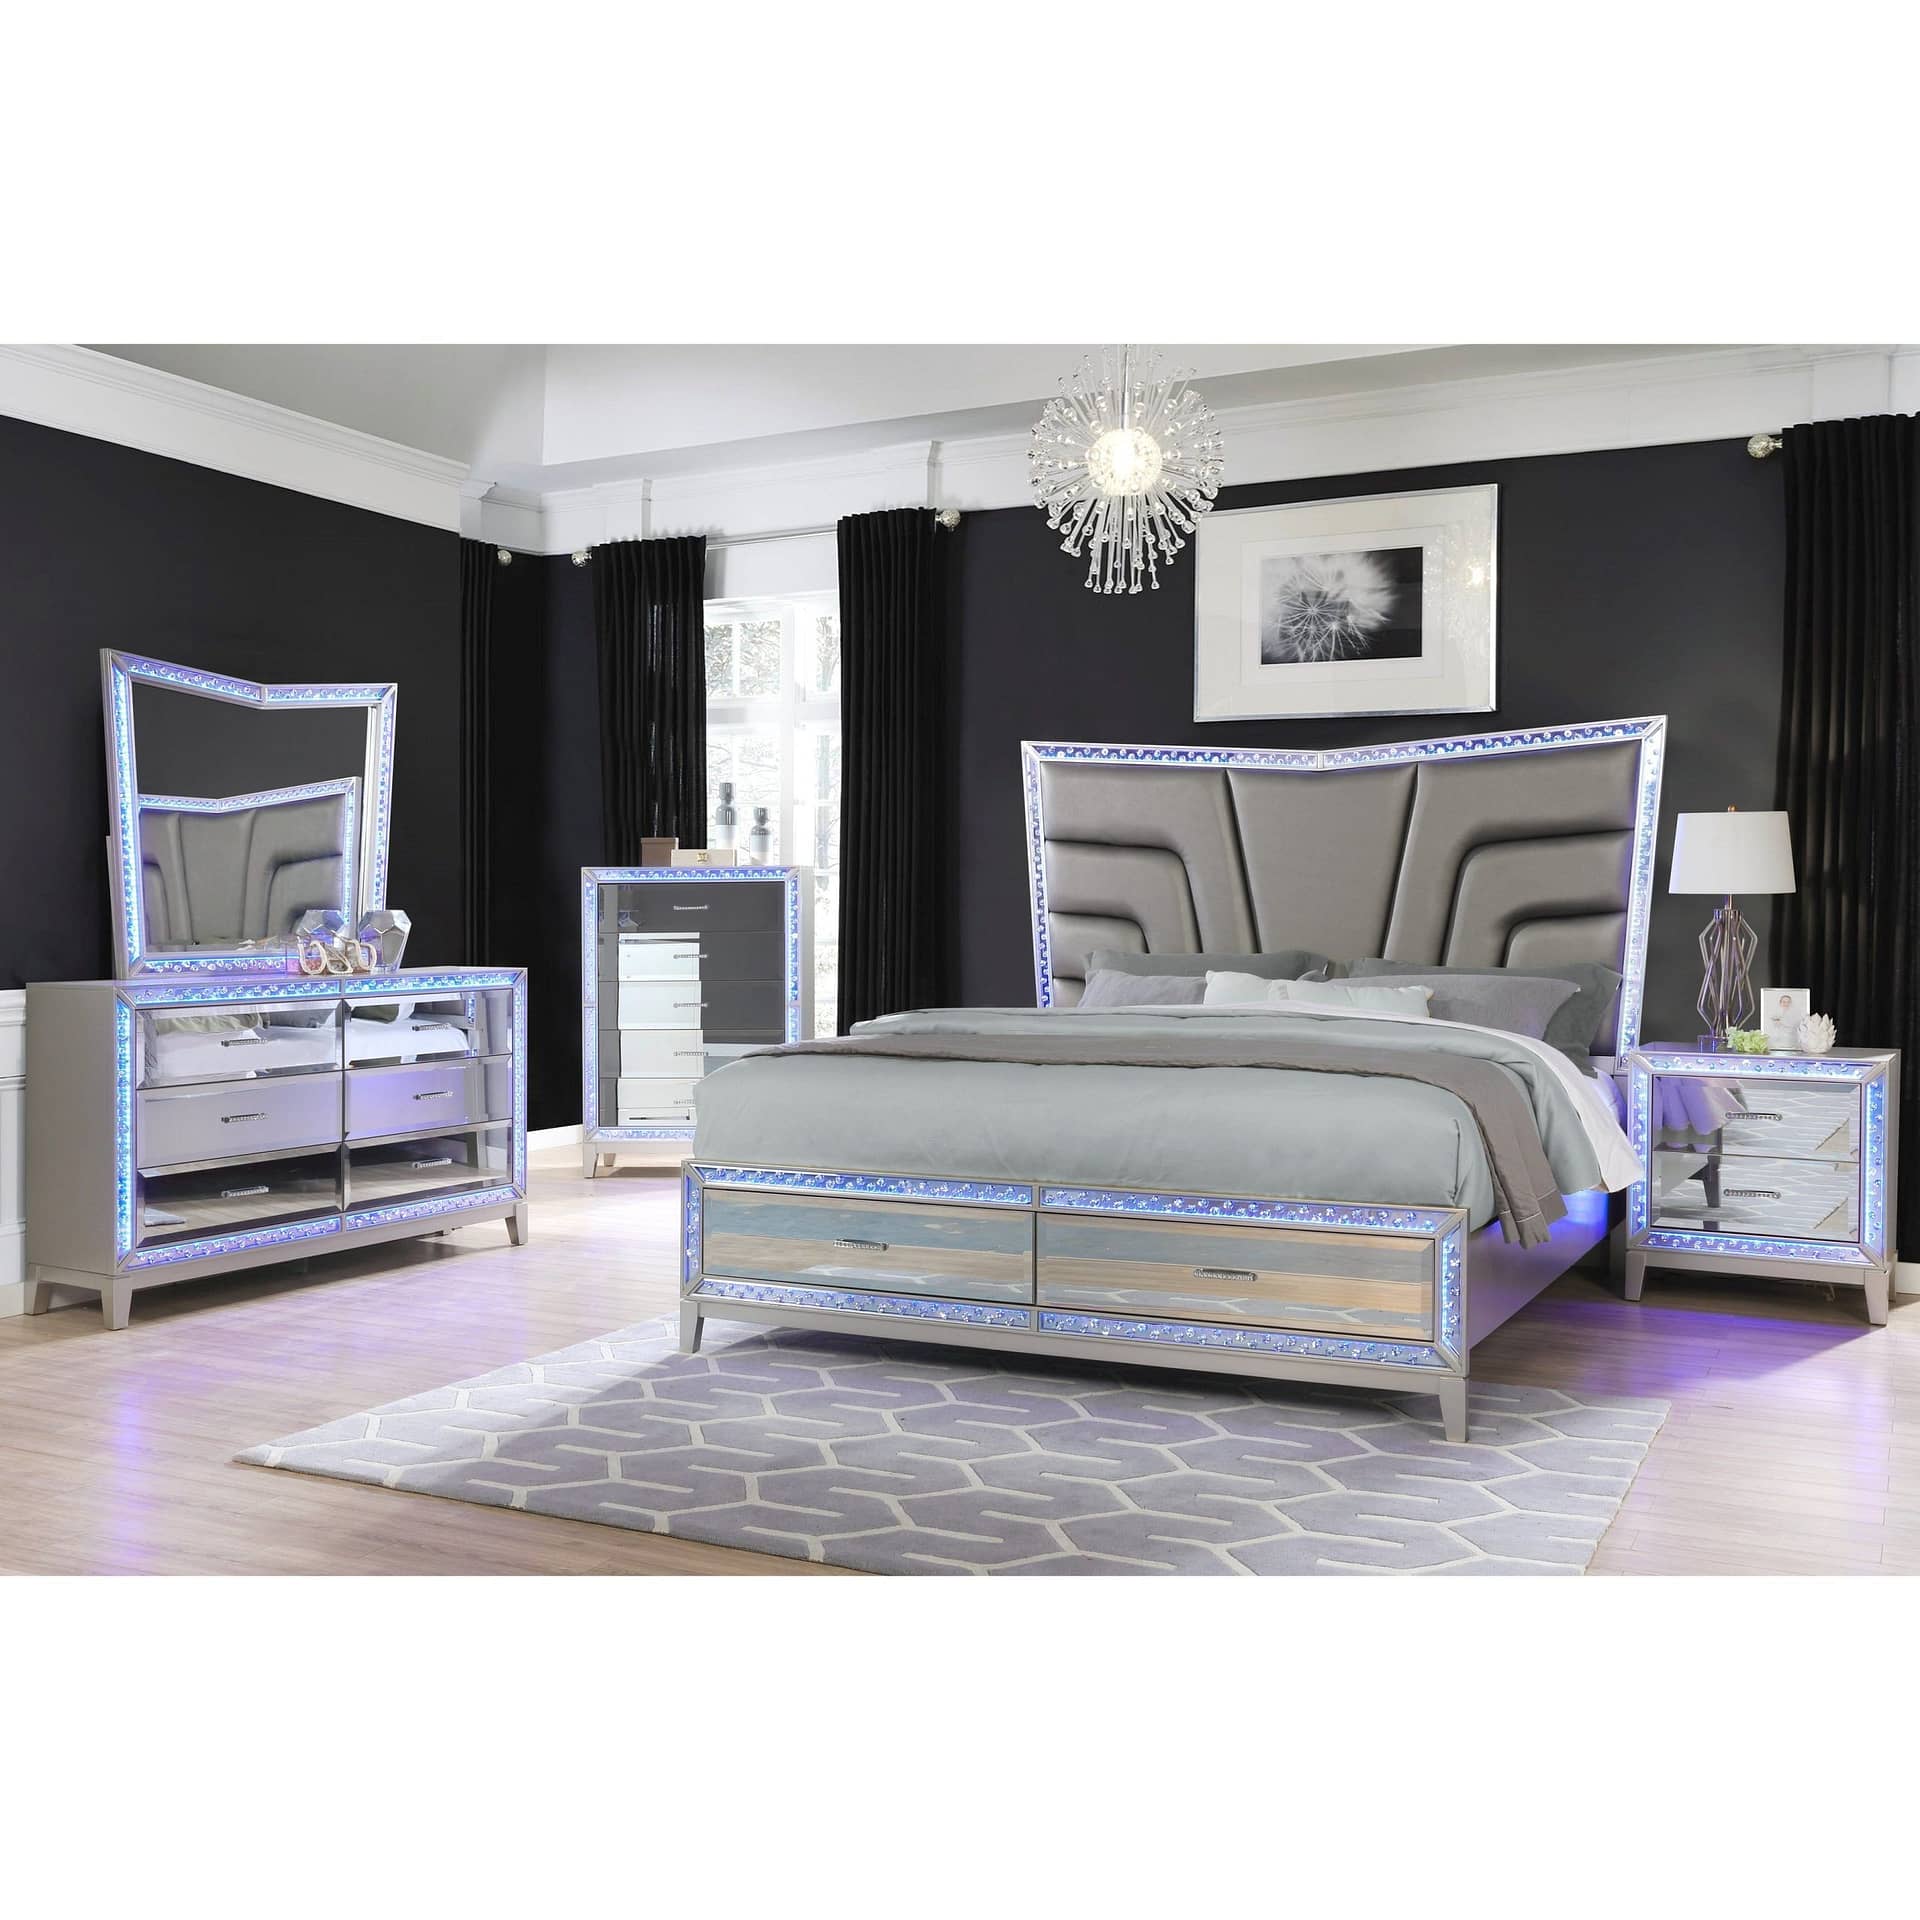 4 Piece Bedroom Set with Queen Bed, Dresser,Mirror and Nightstands in Silver